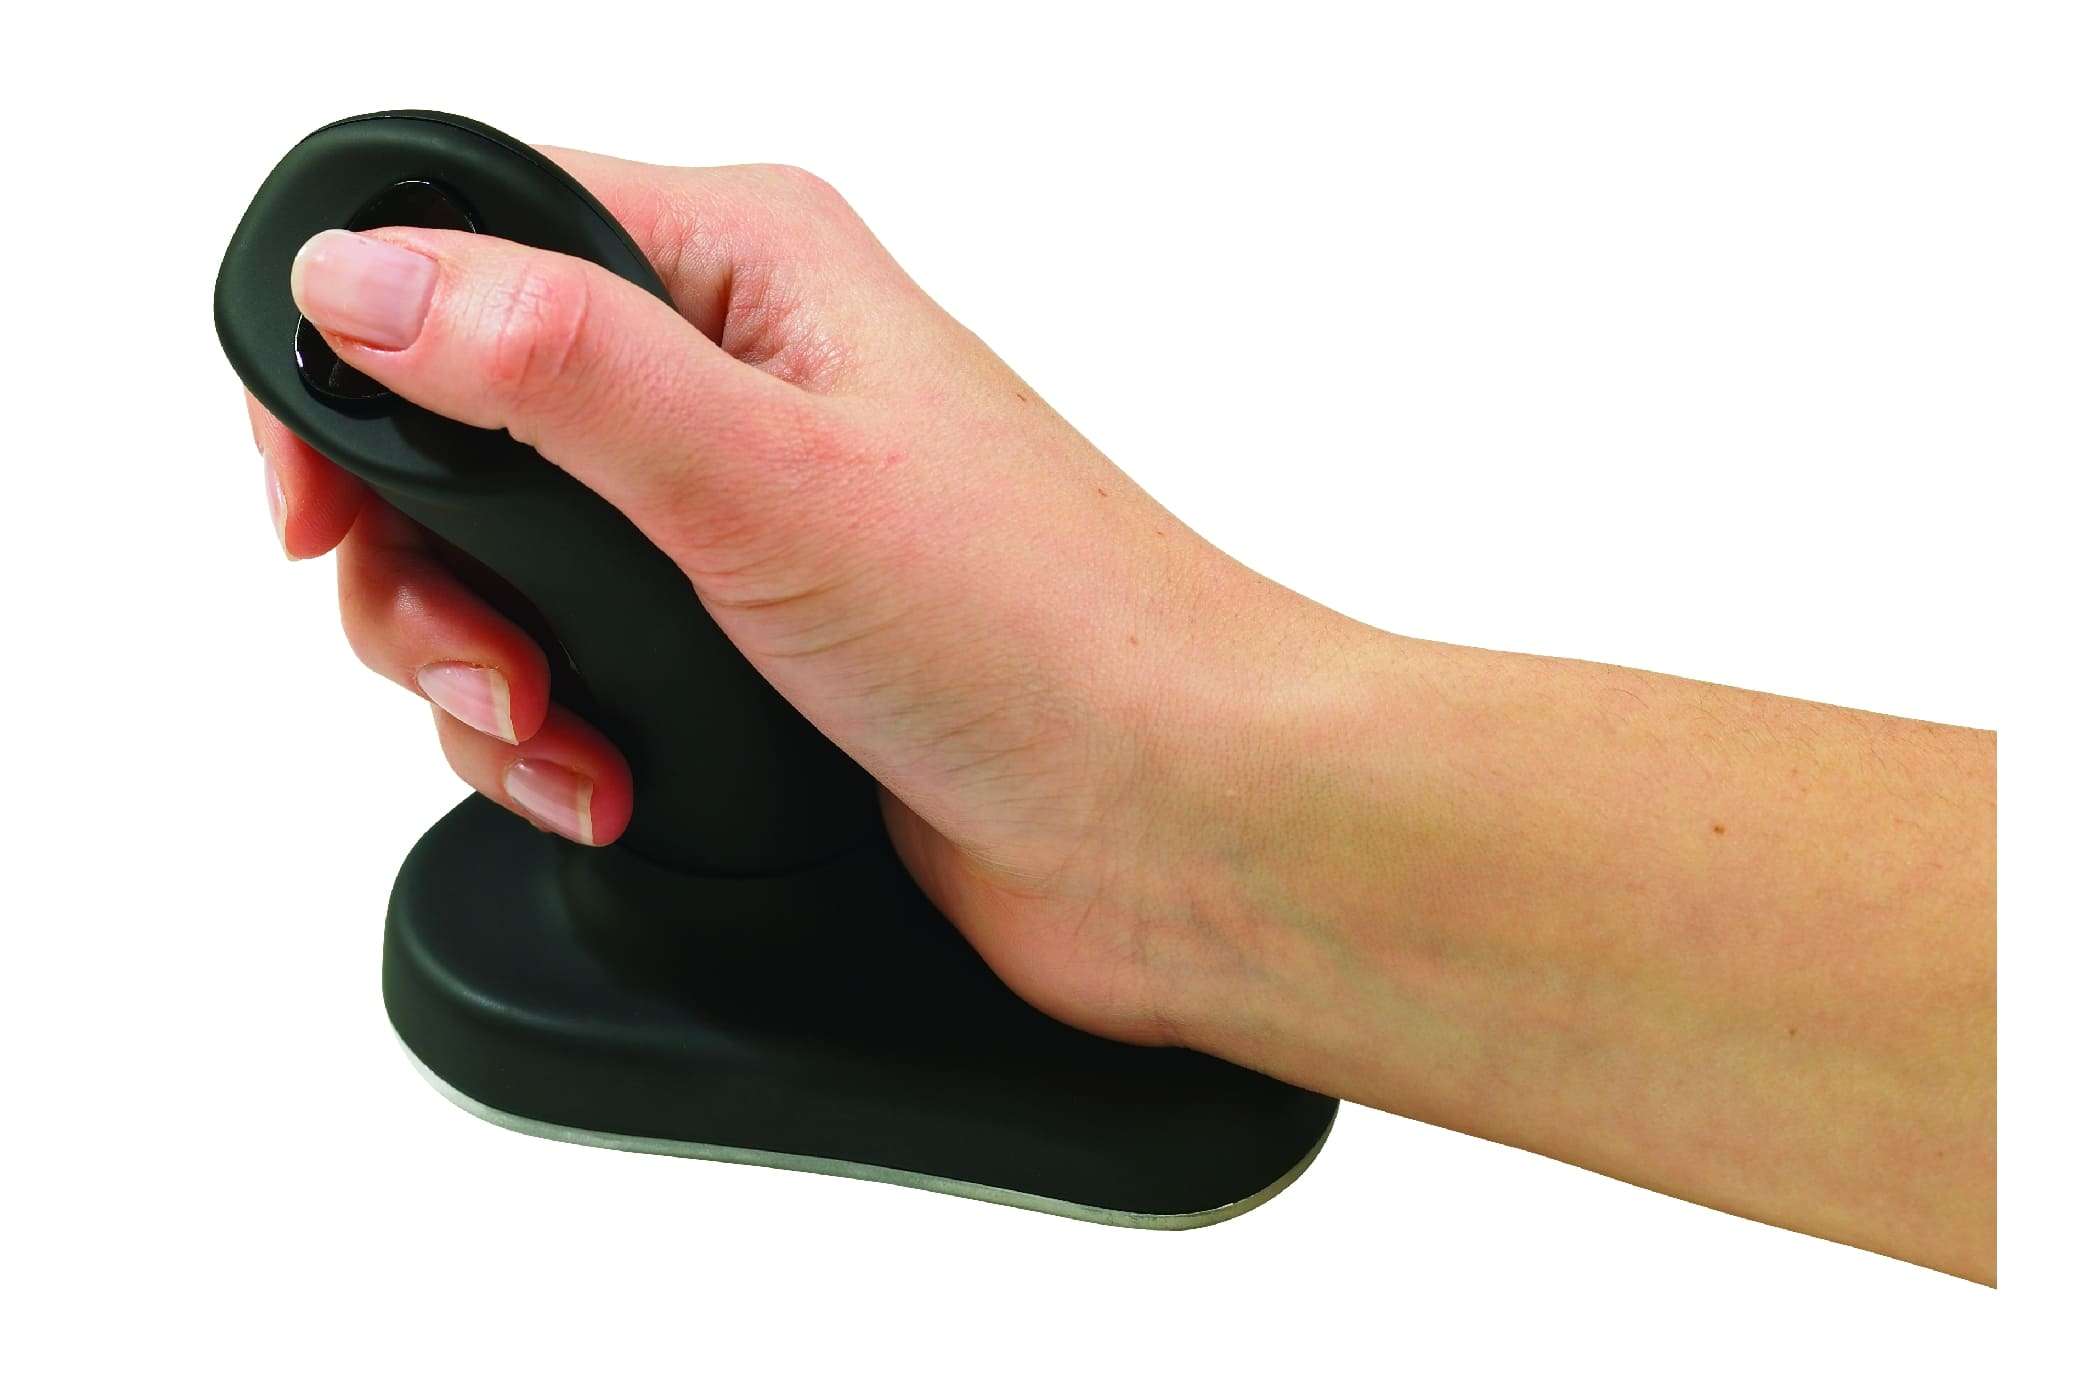 Souris joystick verticale BAKKER ELKHUIZEN Anir Mouse Wireless-[product_reference]-Betterwork - Solutions ergonomiques - Télétra